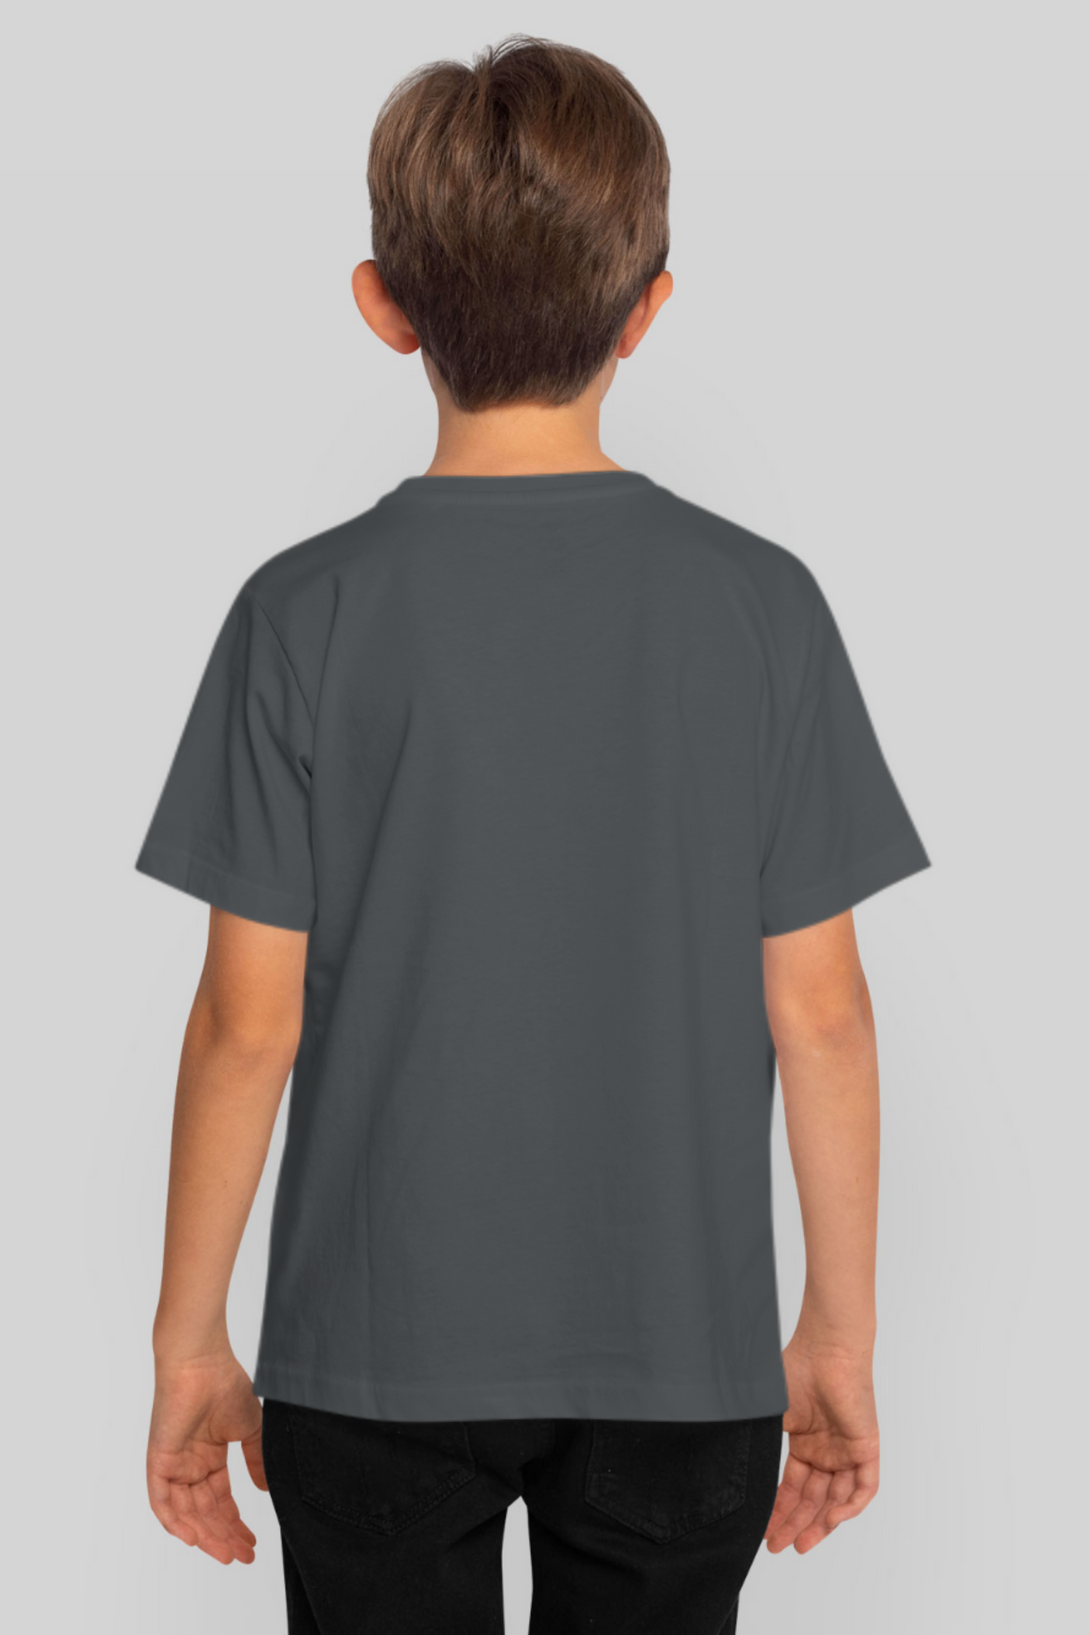 Steel Grey T-Shirt For Boy - WowWaves - 2